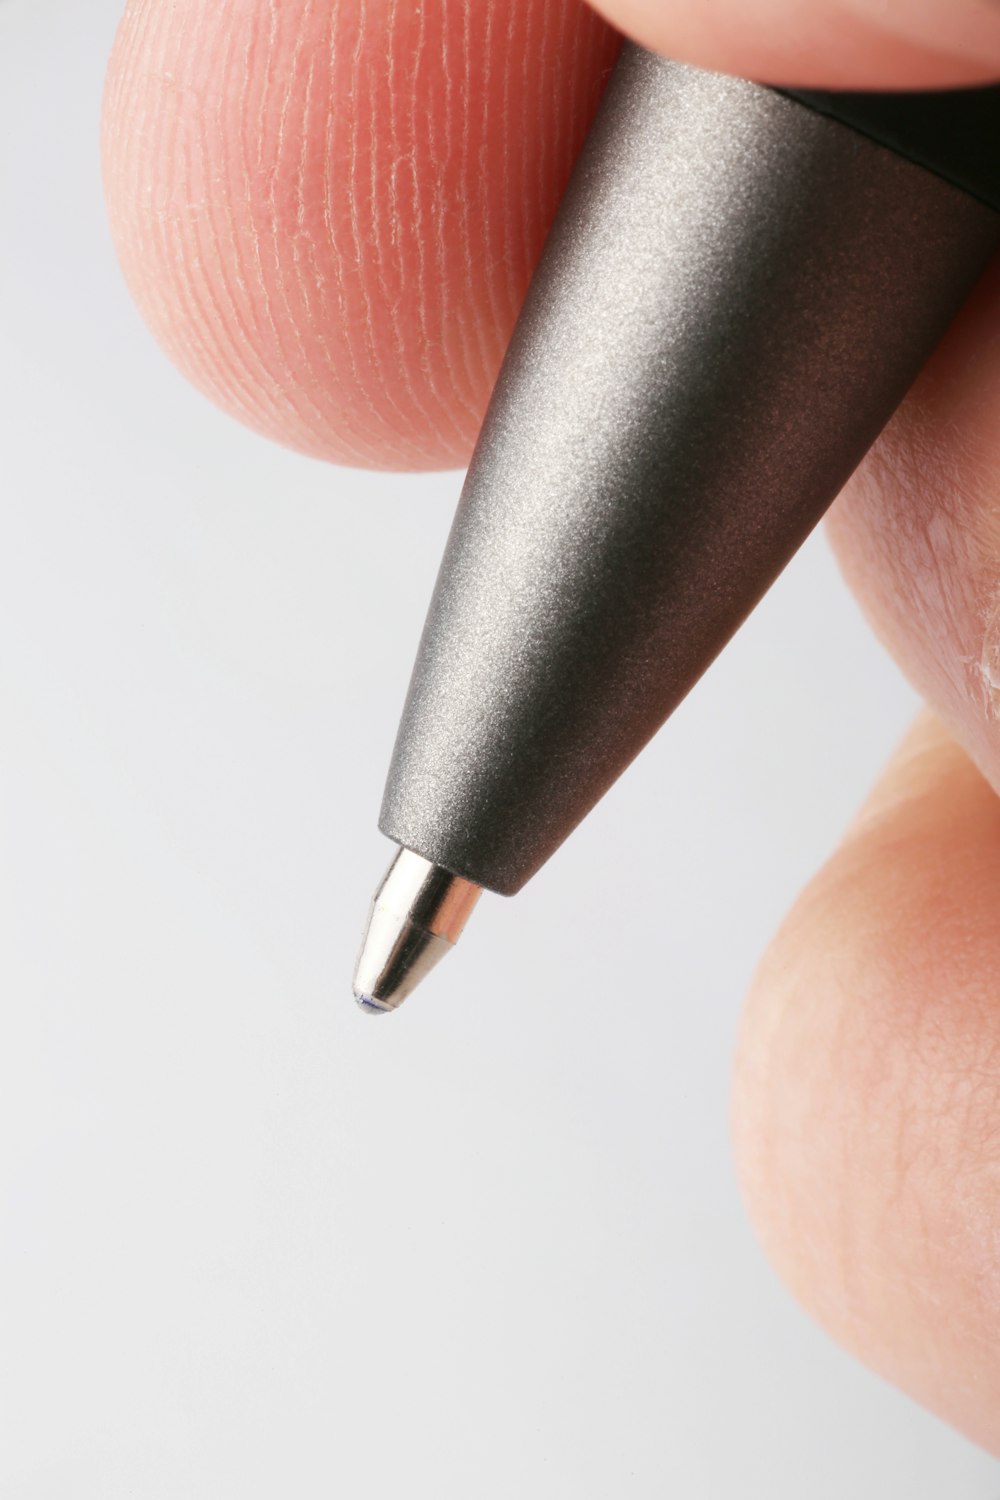 um close up de uma pessoa segurando uma caneta